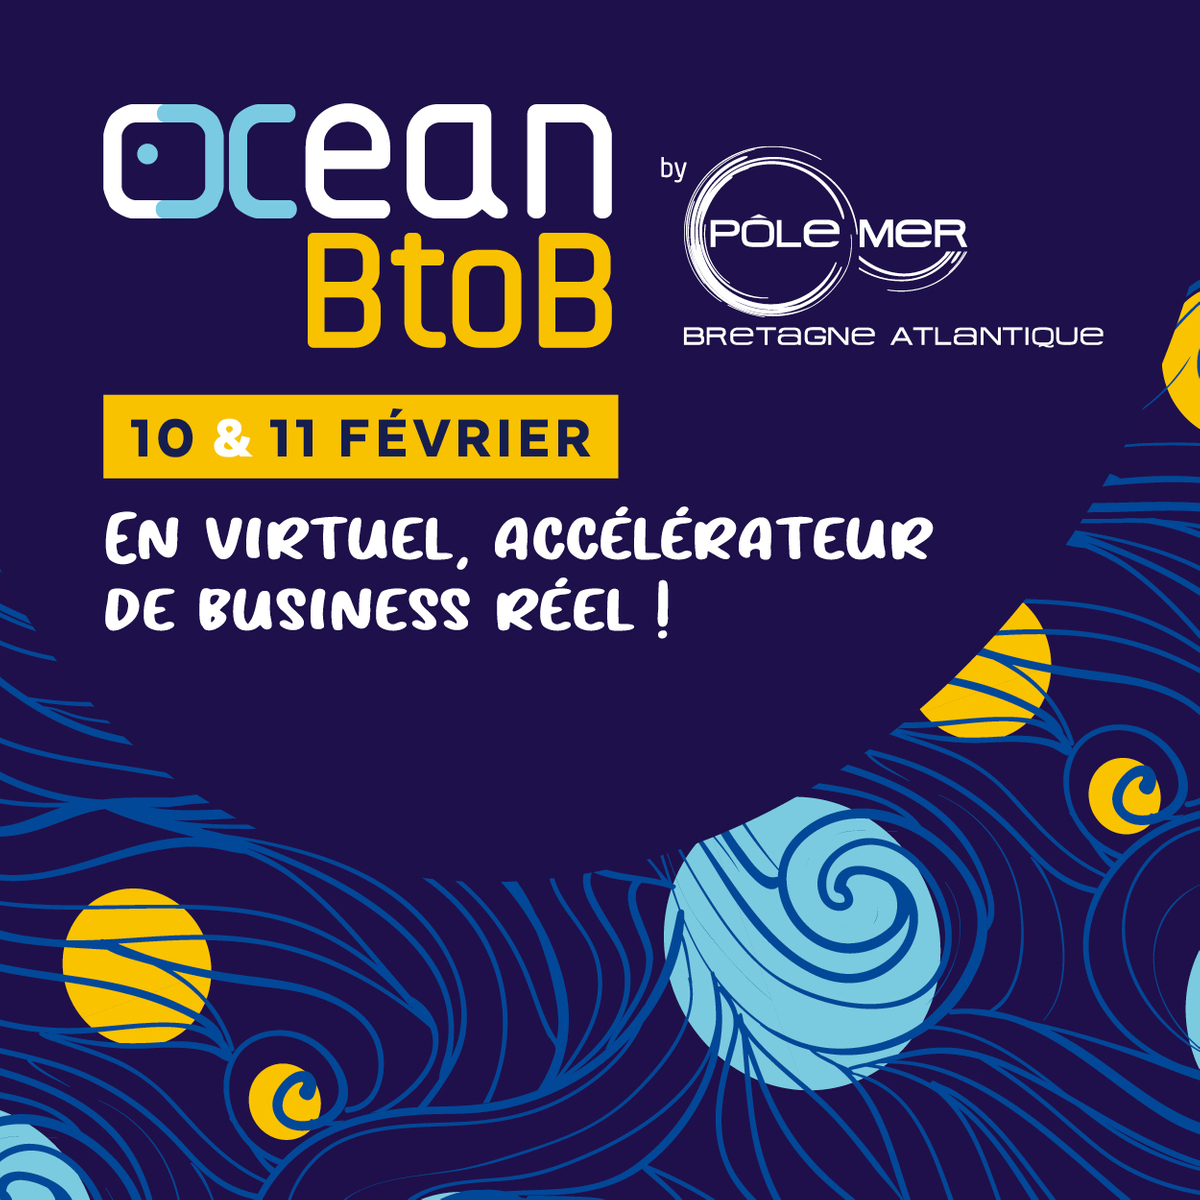 OCEAN BtoB 2021En virtuel, accélérateur de business réel !